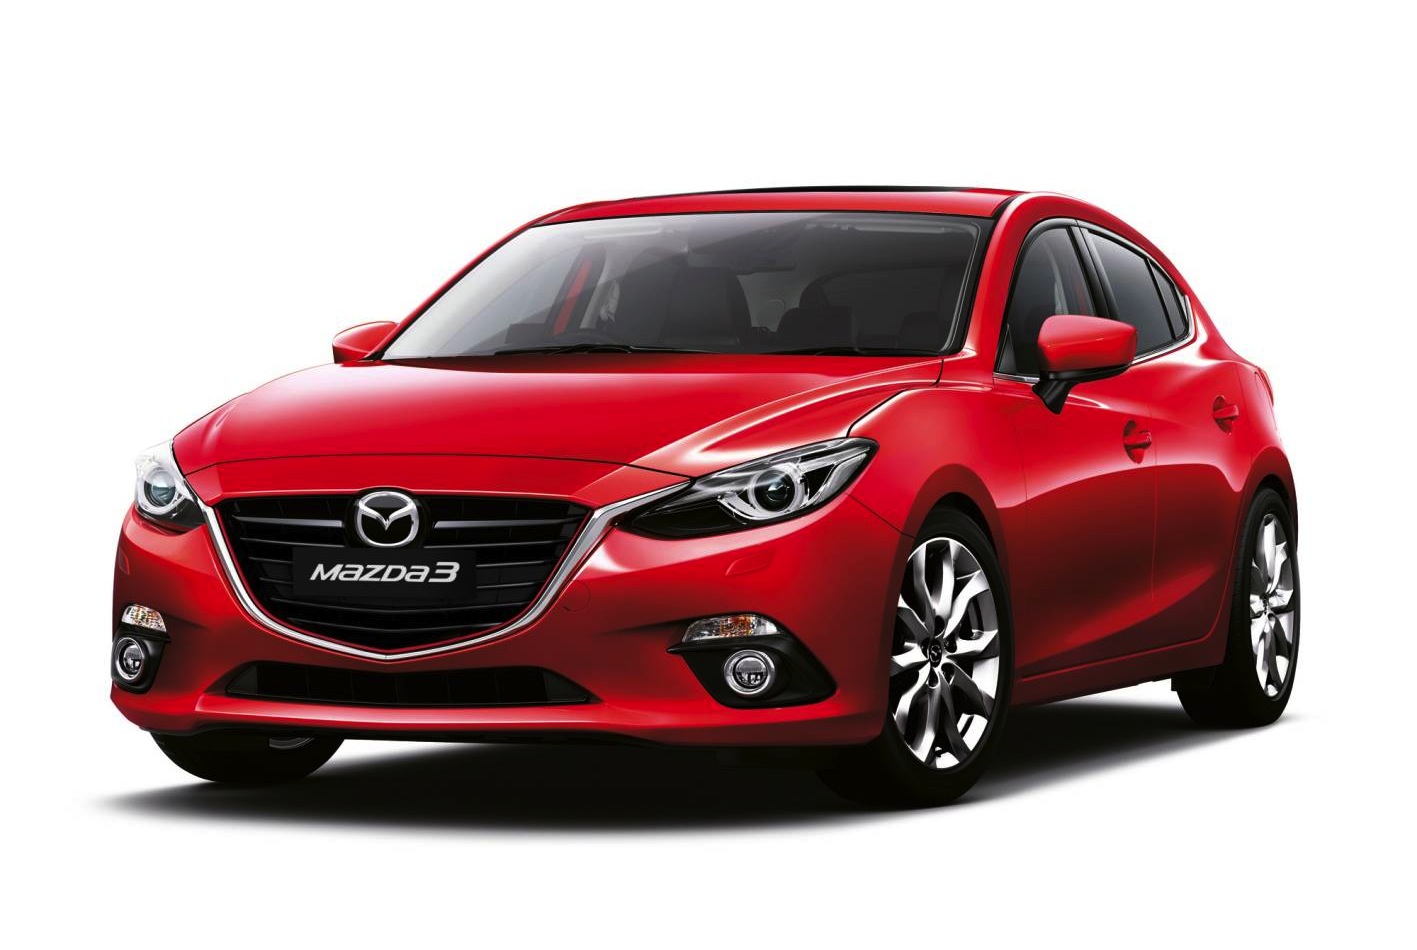 Mazda3 diesel on sale in Australia in September